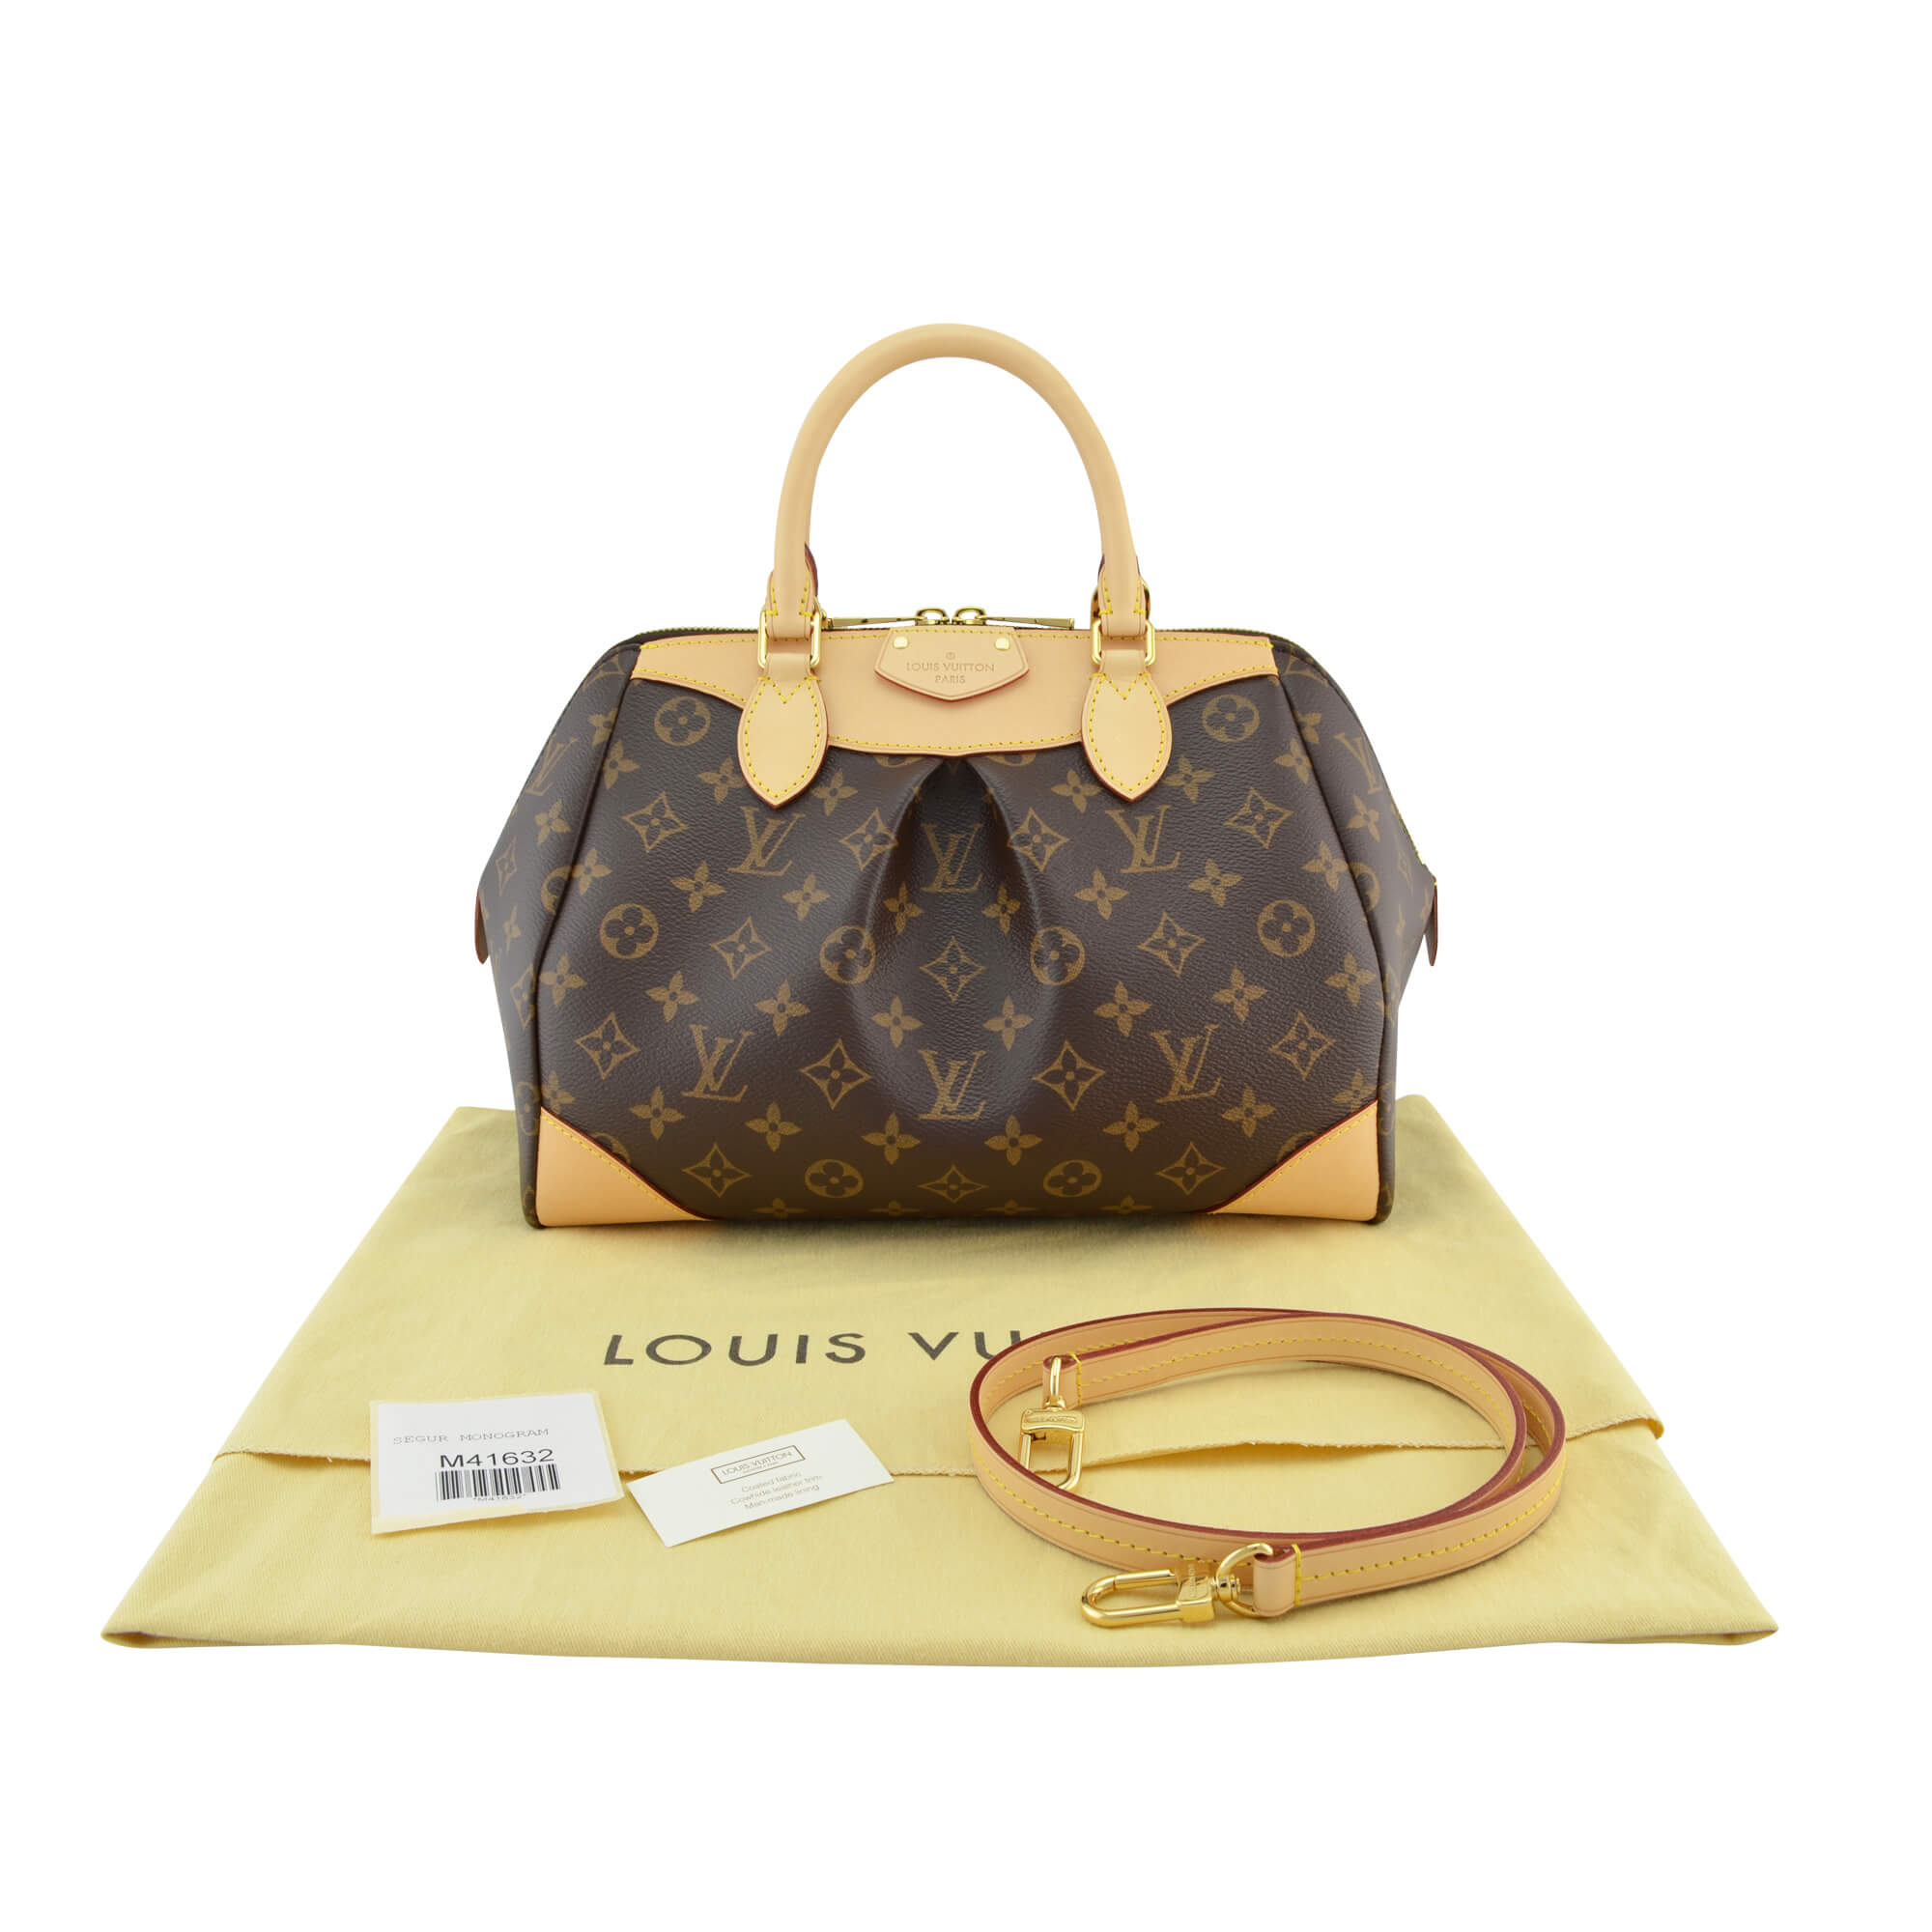 Louis Vuitton Taschen günstig kaufen, Second Hand